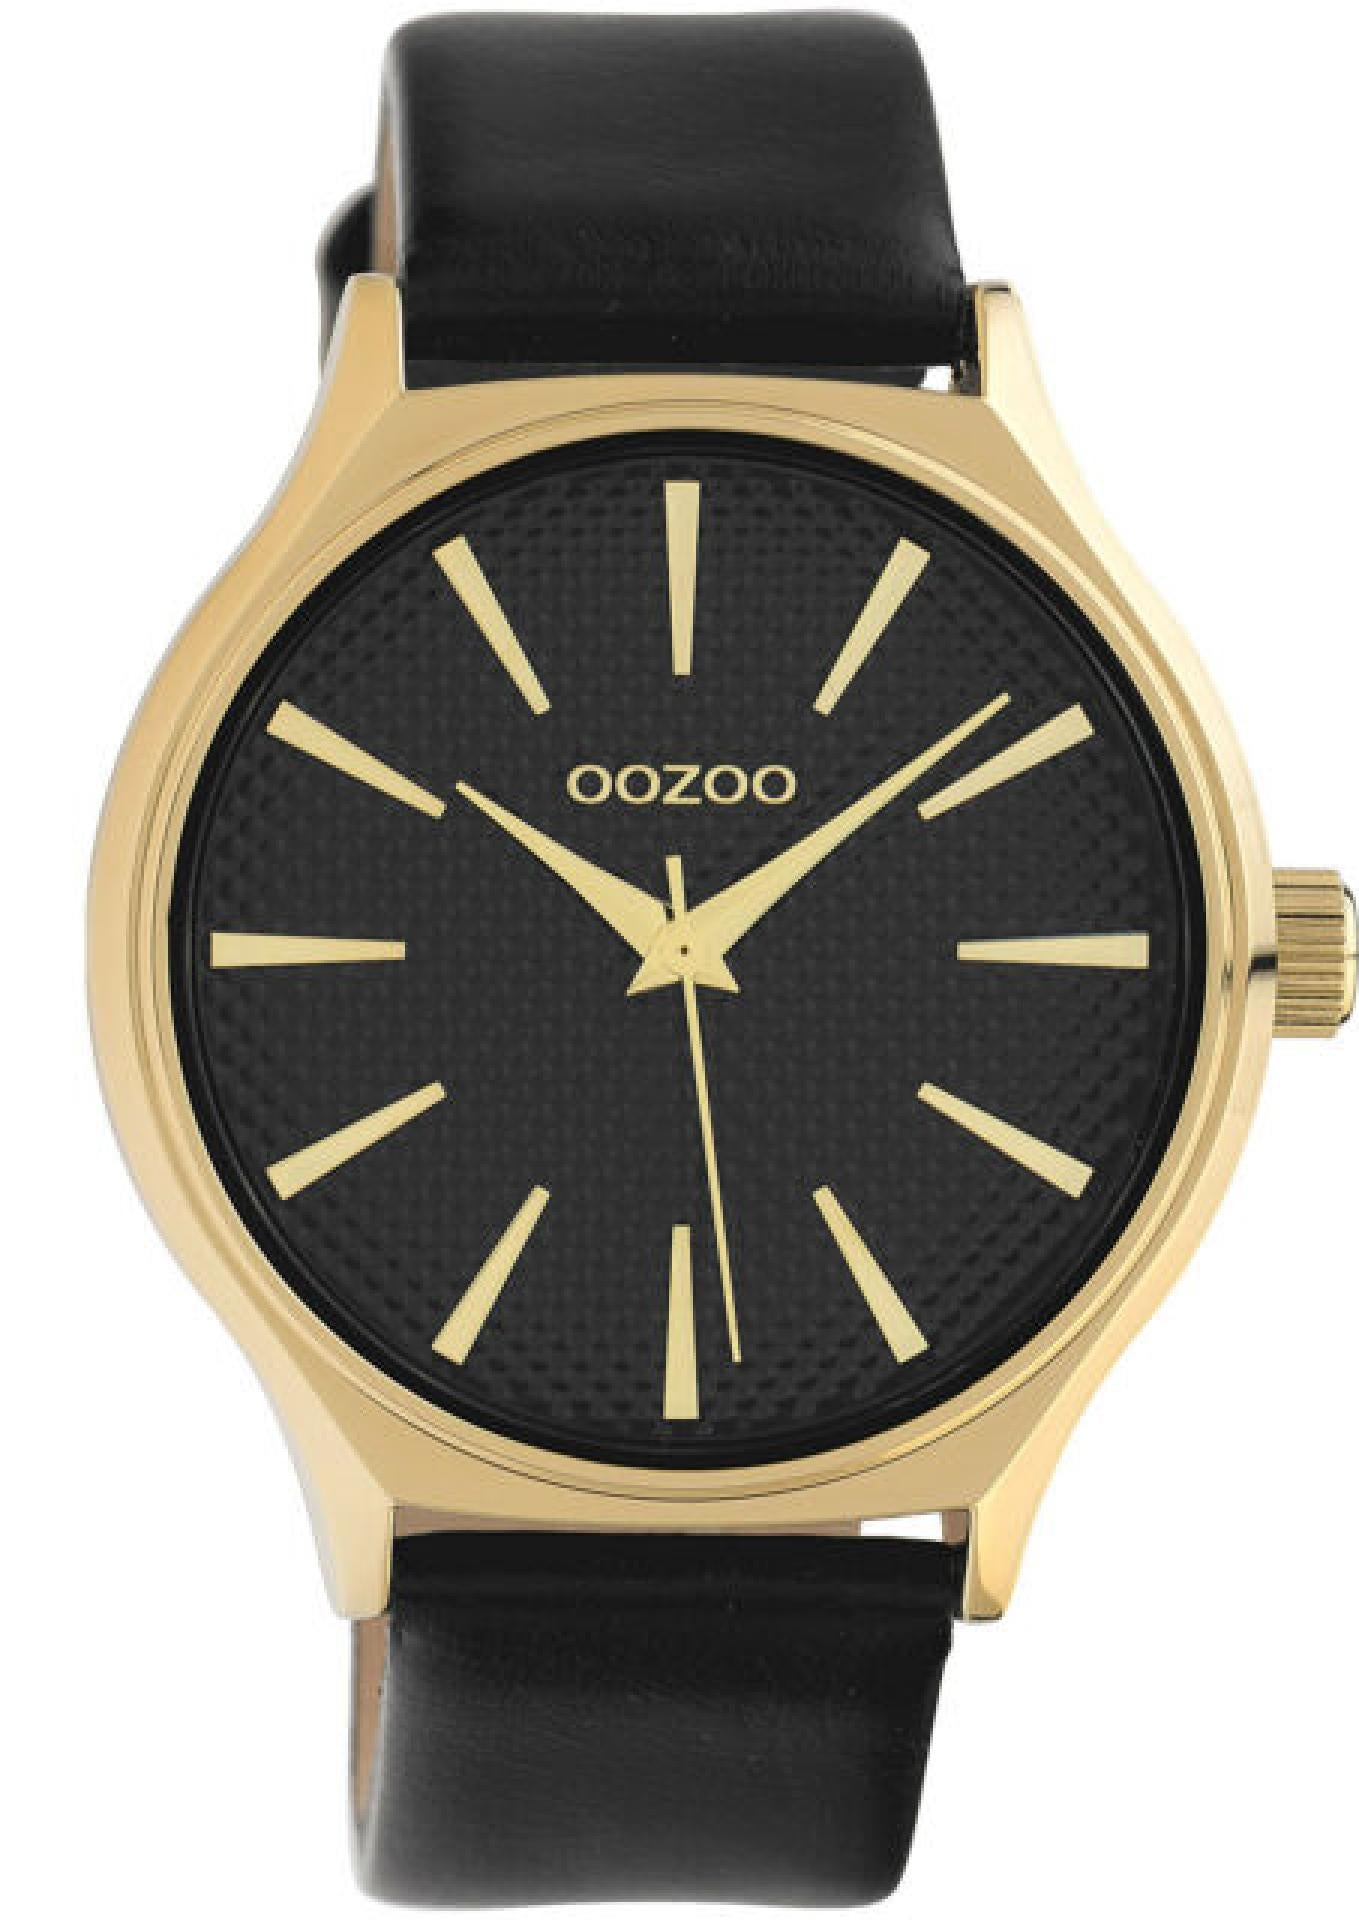 Damenuhr Timepieces Lederarmband schwarz mit goldenem Ziffernblatt 42mm